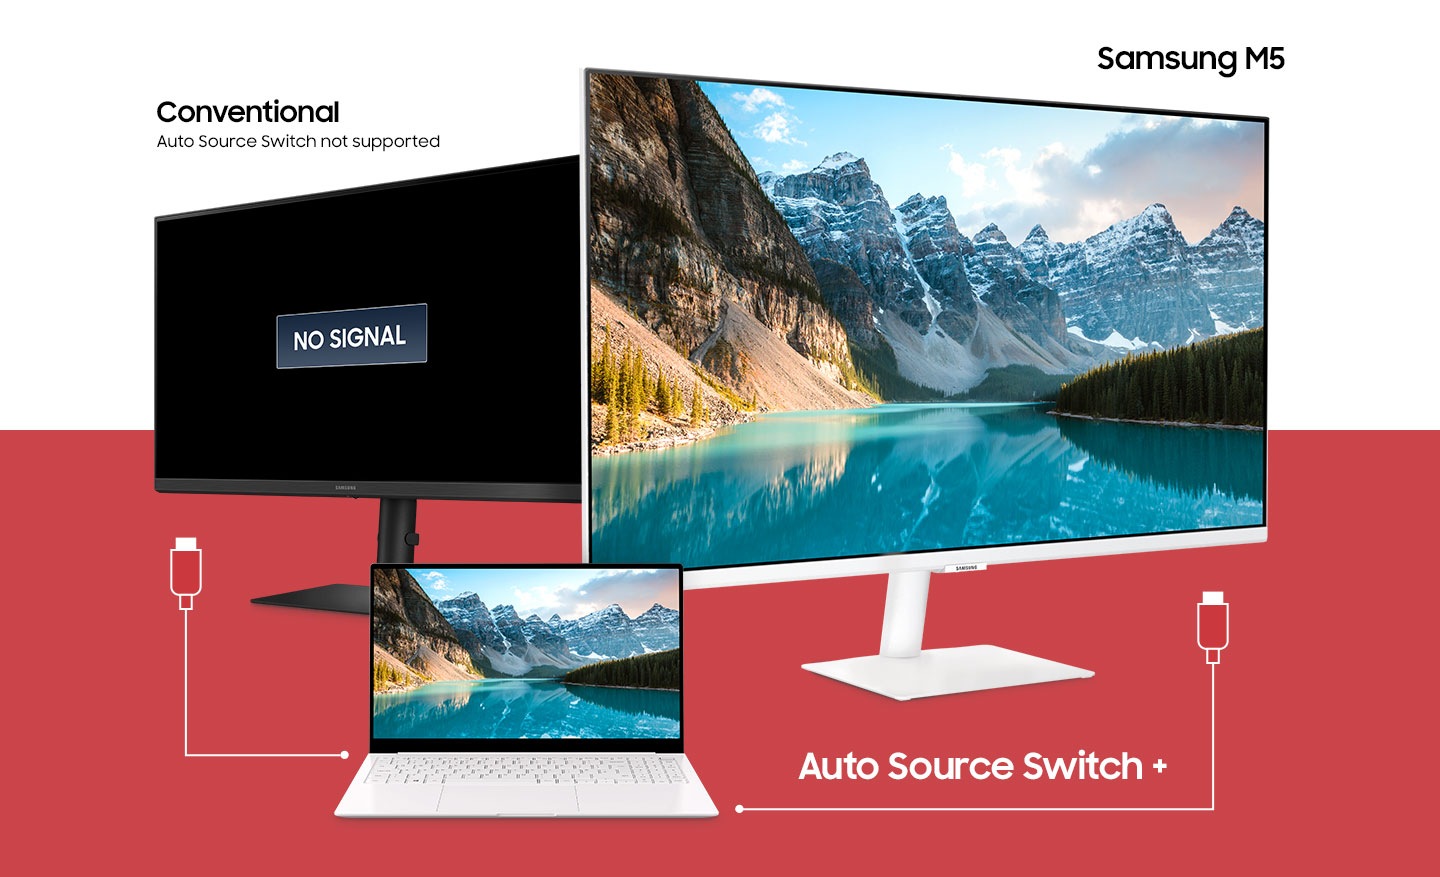 كمبيوتر محمول بين شاشتين.  يحتوي الكمبيوتر المحمول على كبلين مختلفين يحاولان الاتصال بالشاشات.  فوق الشاشة اليسرى ، يظهر النص "تقليدي ، تبديل المصدر التلقائي غير مدعوم" ويظهر رمز "لا توجد إشارة" على الشاشة.  يظهر أعلى الشاشة اليمنى نص "Samsung M7" ويظهر مشهد جبلي على الشاشة بسبب وظيفة Auto Source Switch +.